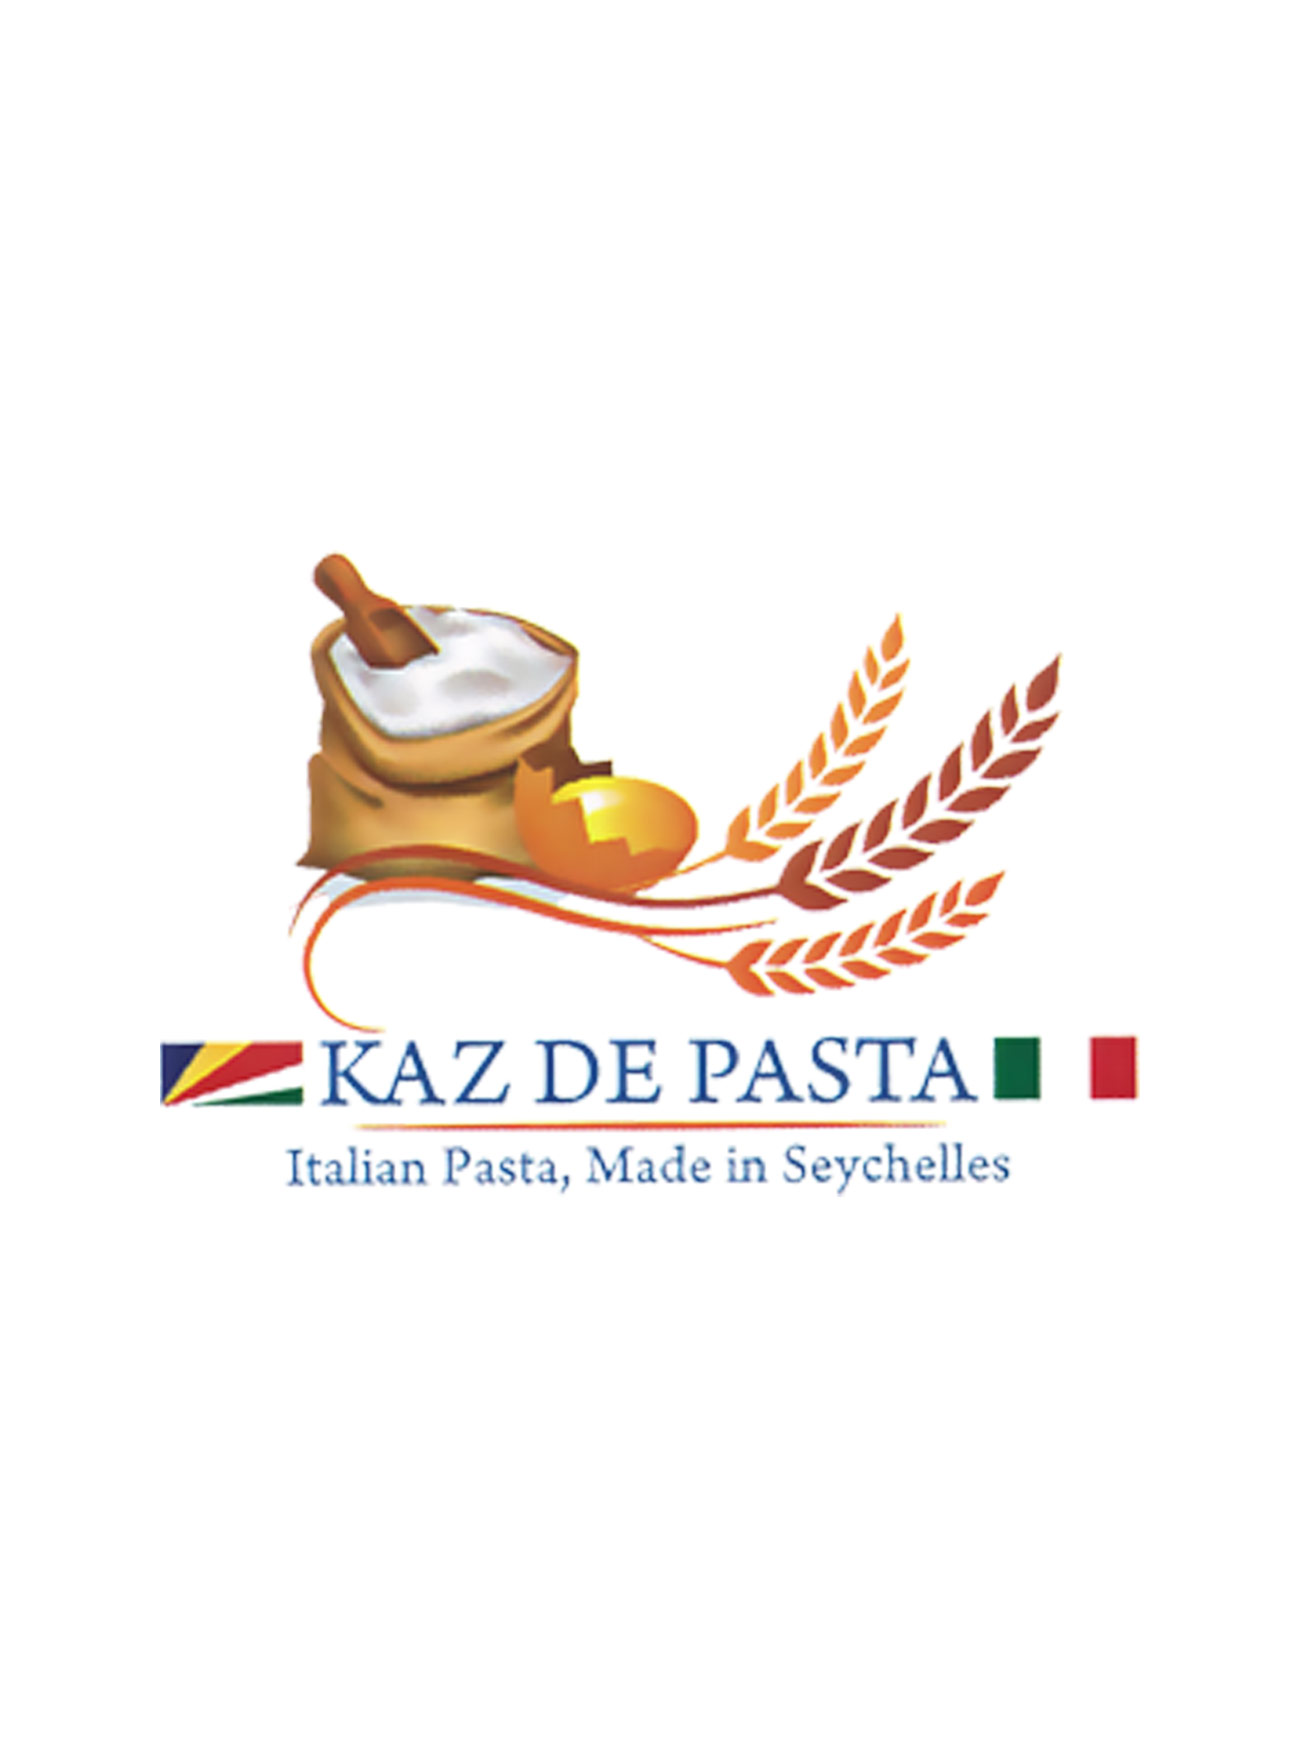 Kaz-de-Pasta-porfolio-clienti-mercomm-agenzia-comunicazione